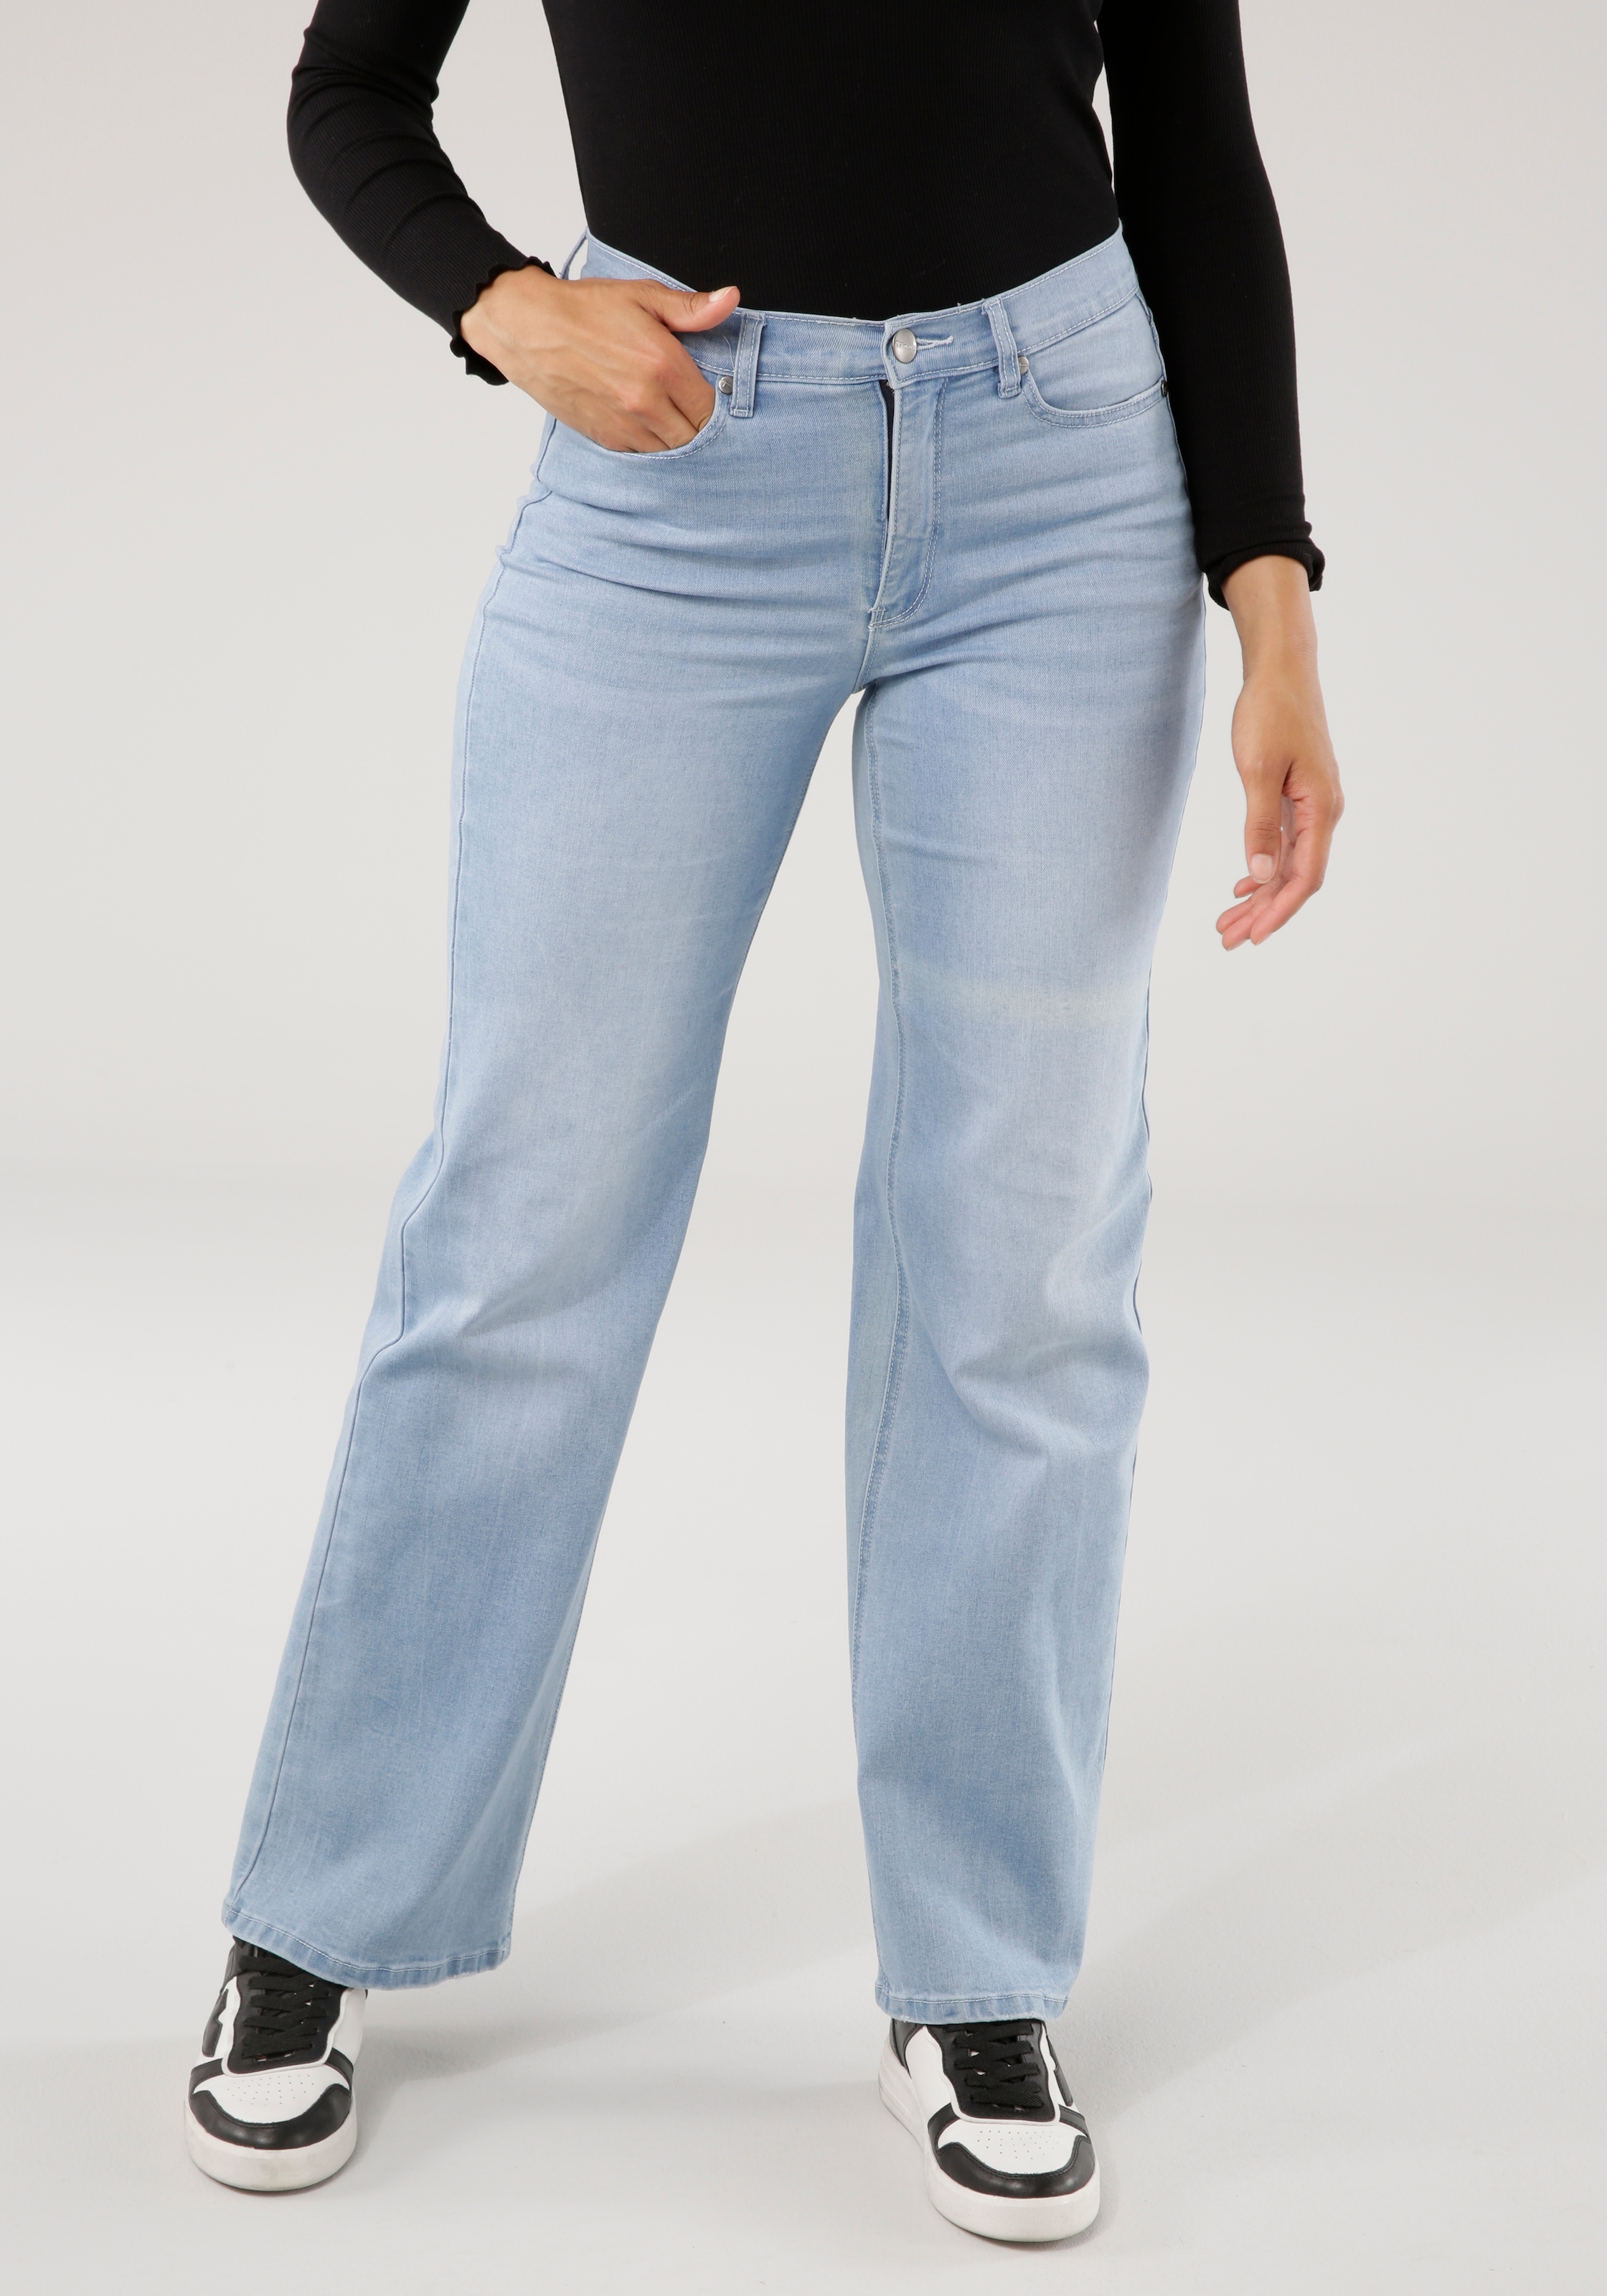 ♕ bei Weite 5-pocket-Style im Tamaris Jeans,